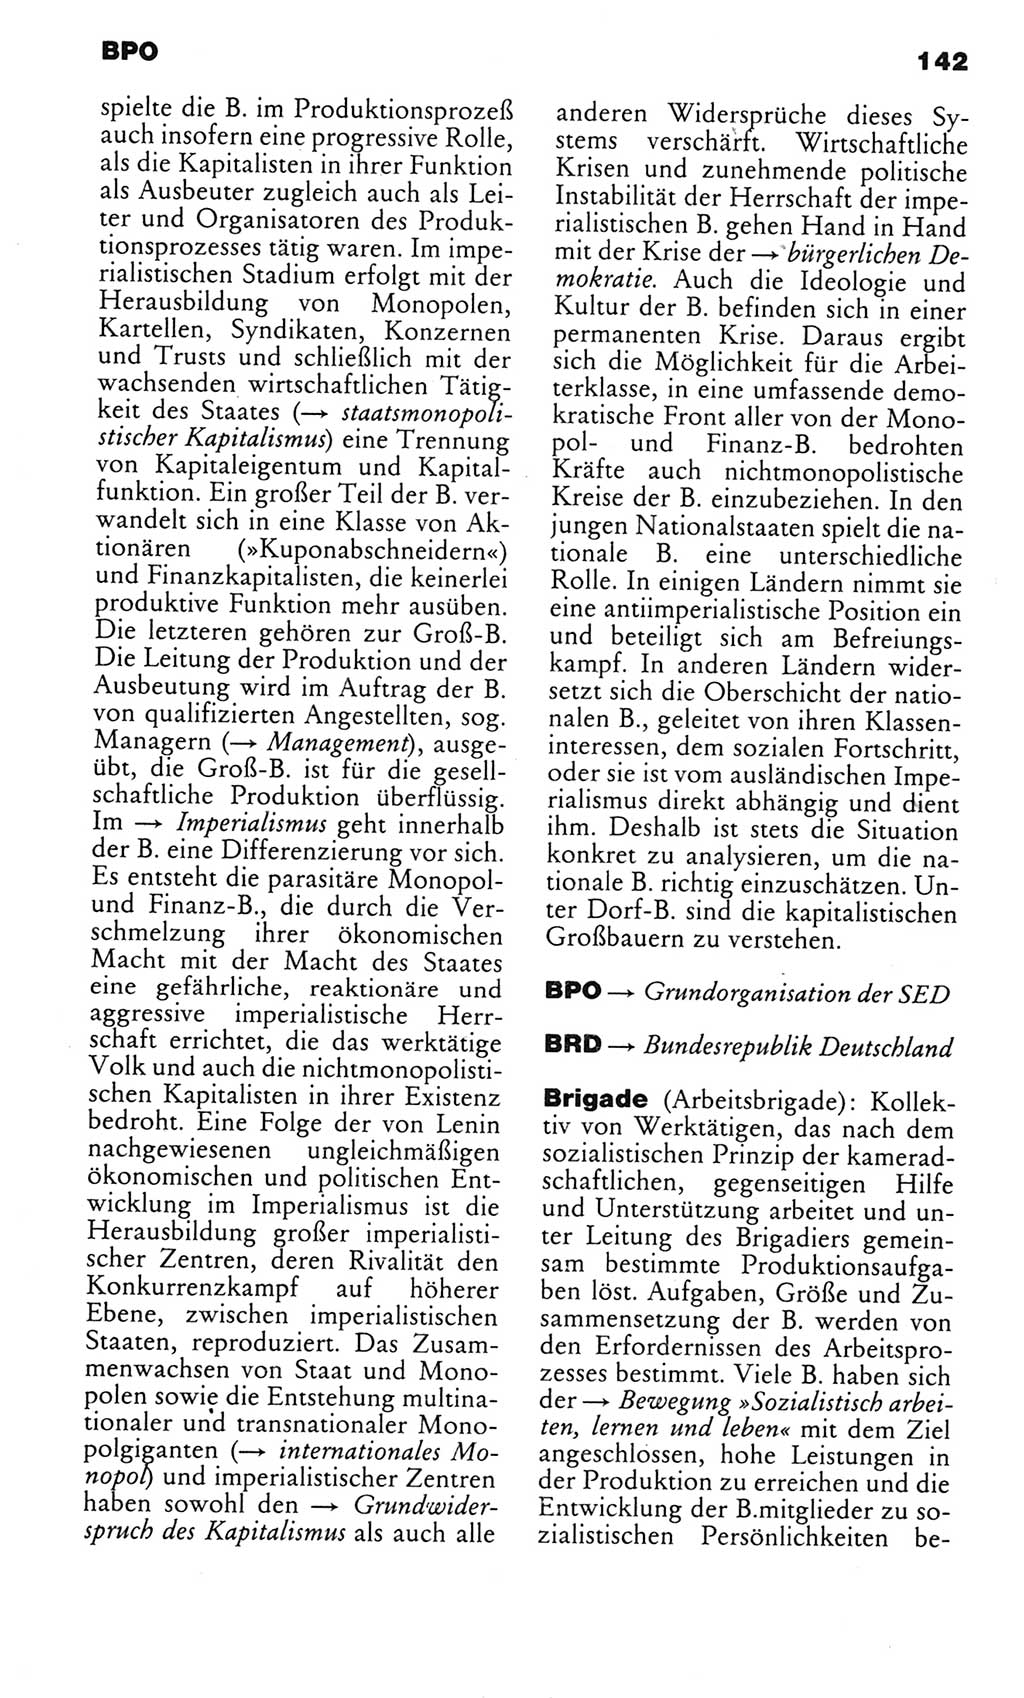 Kleines politisches Wörterbuch [Deutsche Demokratische Republik (DDR)] 1985, Seite 142 (Kl. pol. Wb. DDR 1985, S. 142)